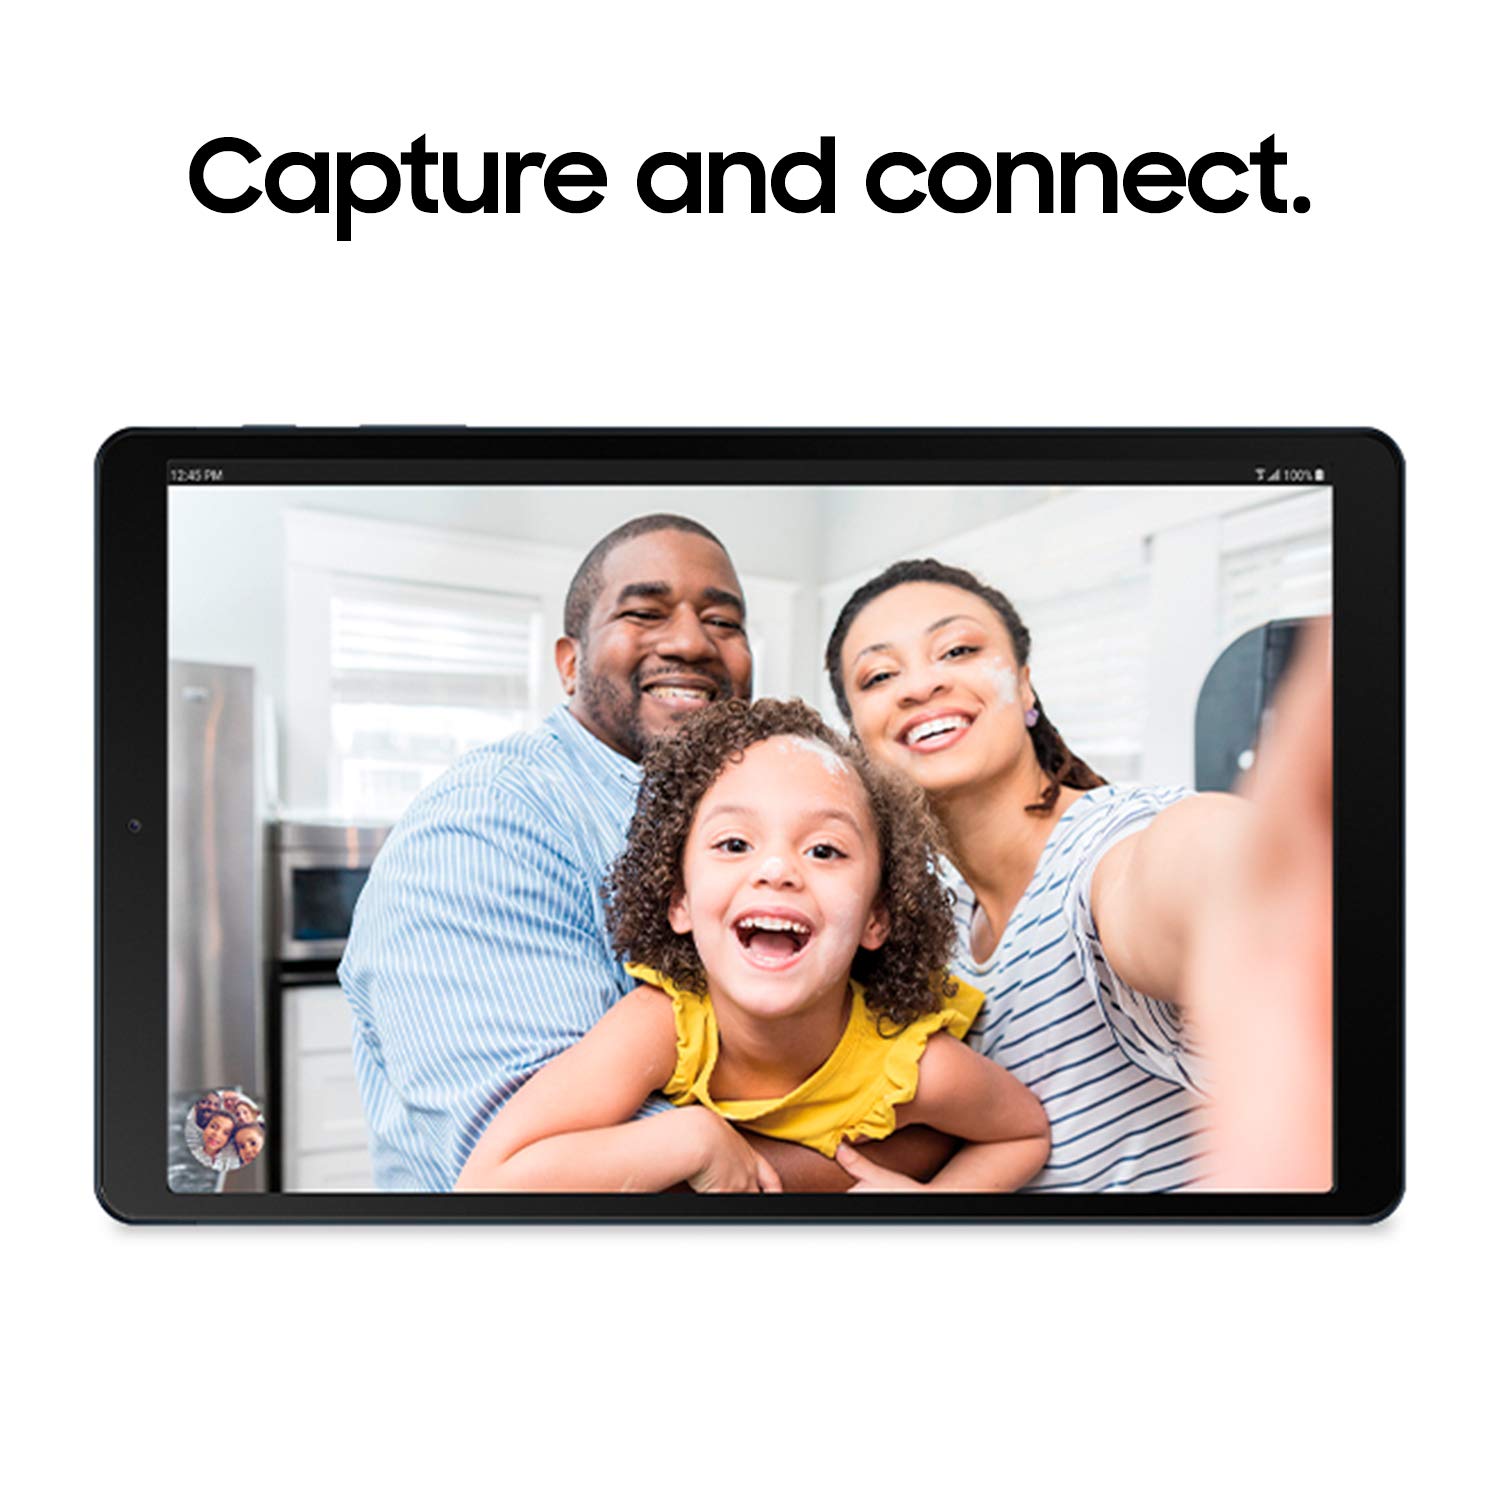 SAMSUNG SM-T510NZDFXAR Galaxy Tab A 10.1 64 GB Wi-Fi Tablet, Silver, 2019